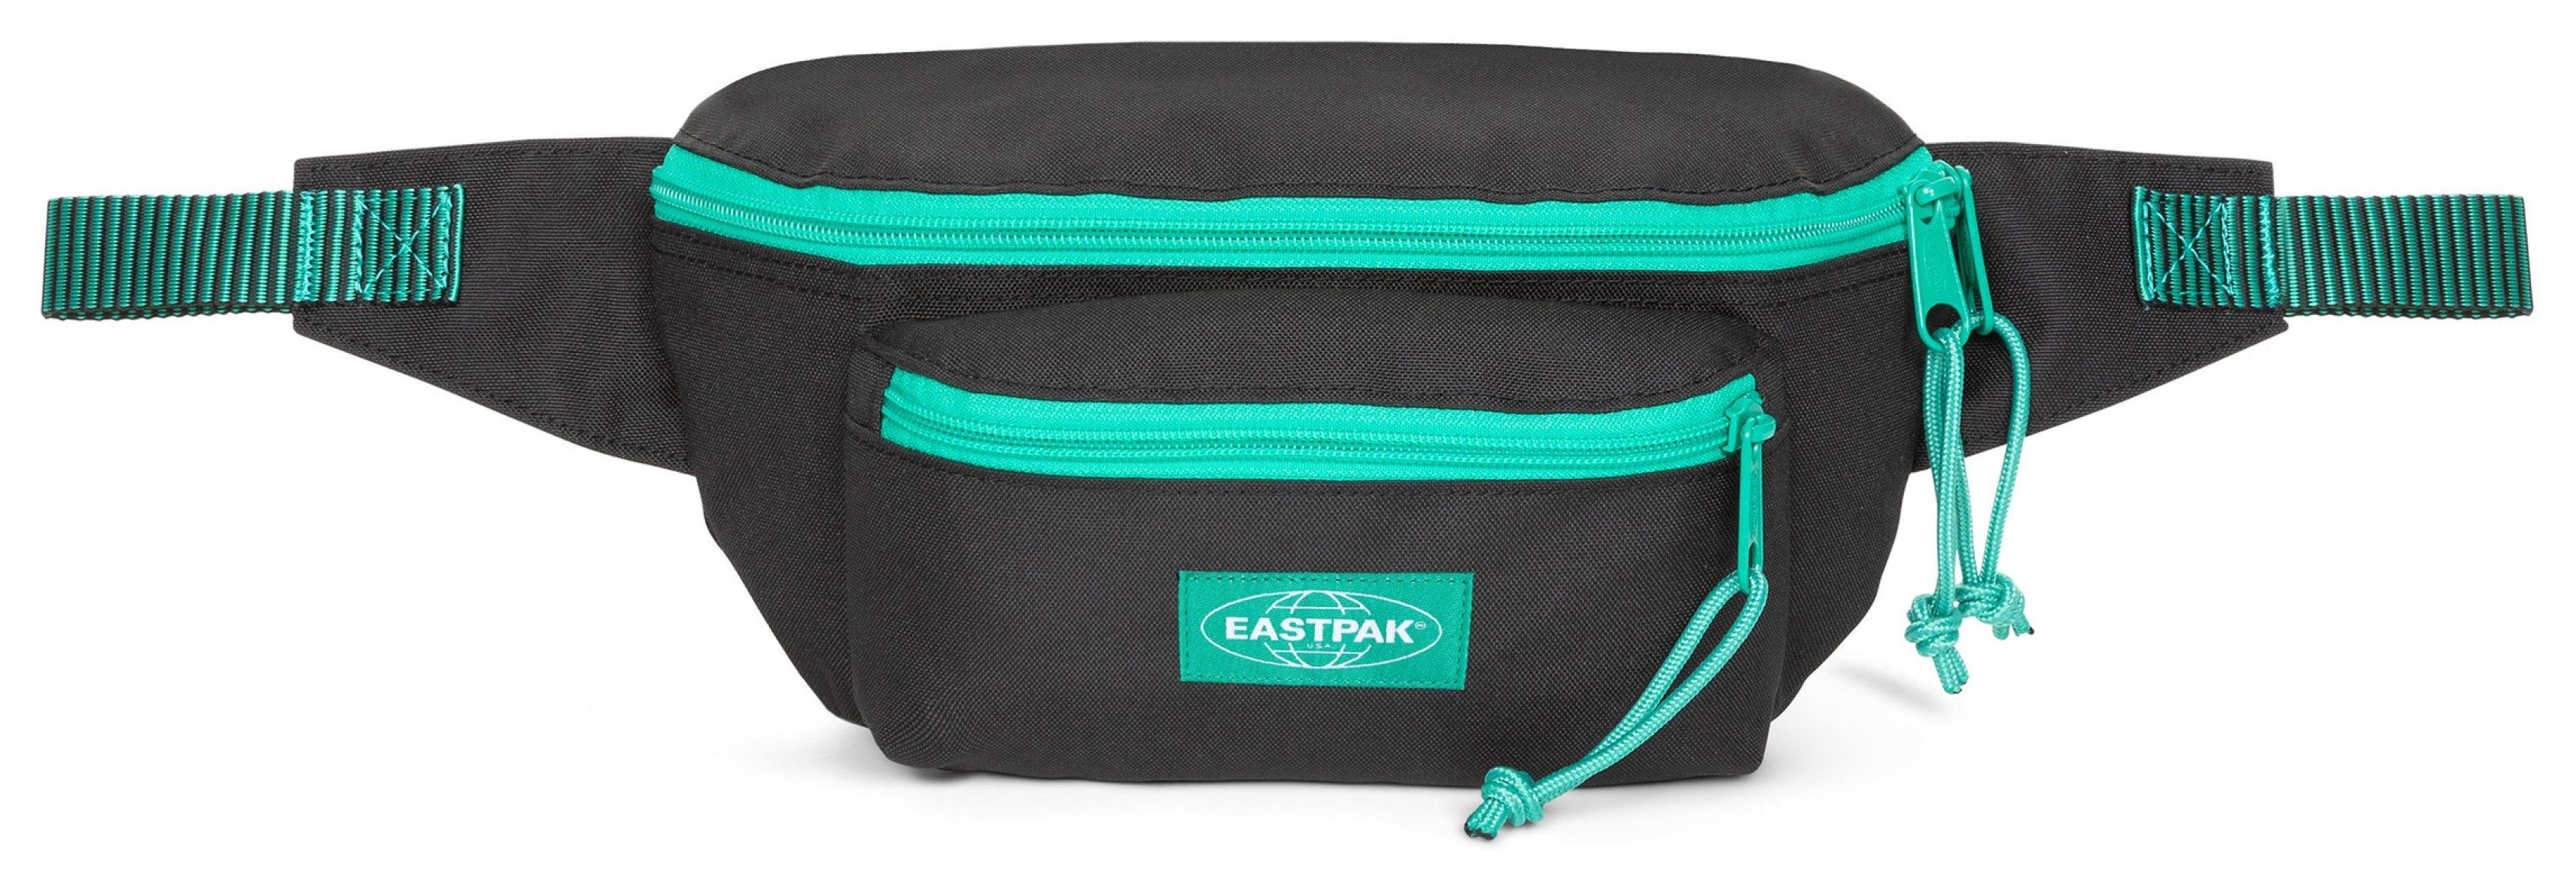 Angebot anführen Eastpak Bauchtasche DOGGY praktischen im BAG, Kontrast Stripe Black Design